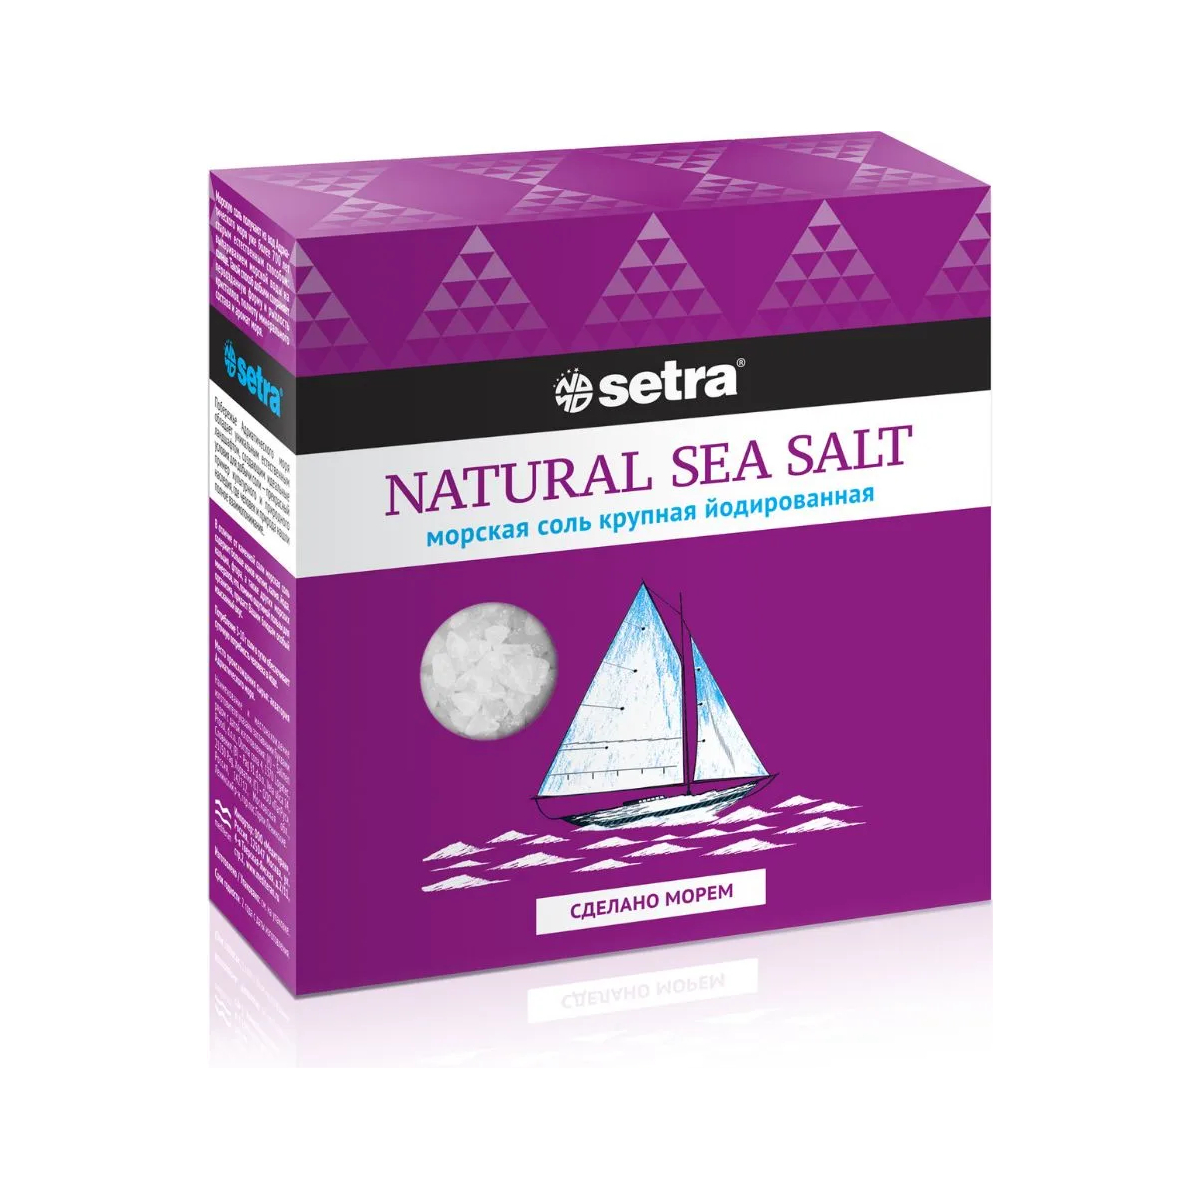 Морская соль Setra Натуральная 500 г соль пищевая setra морская йодированная 500 г